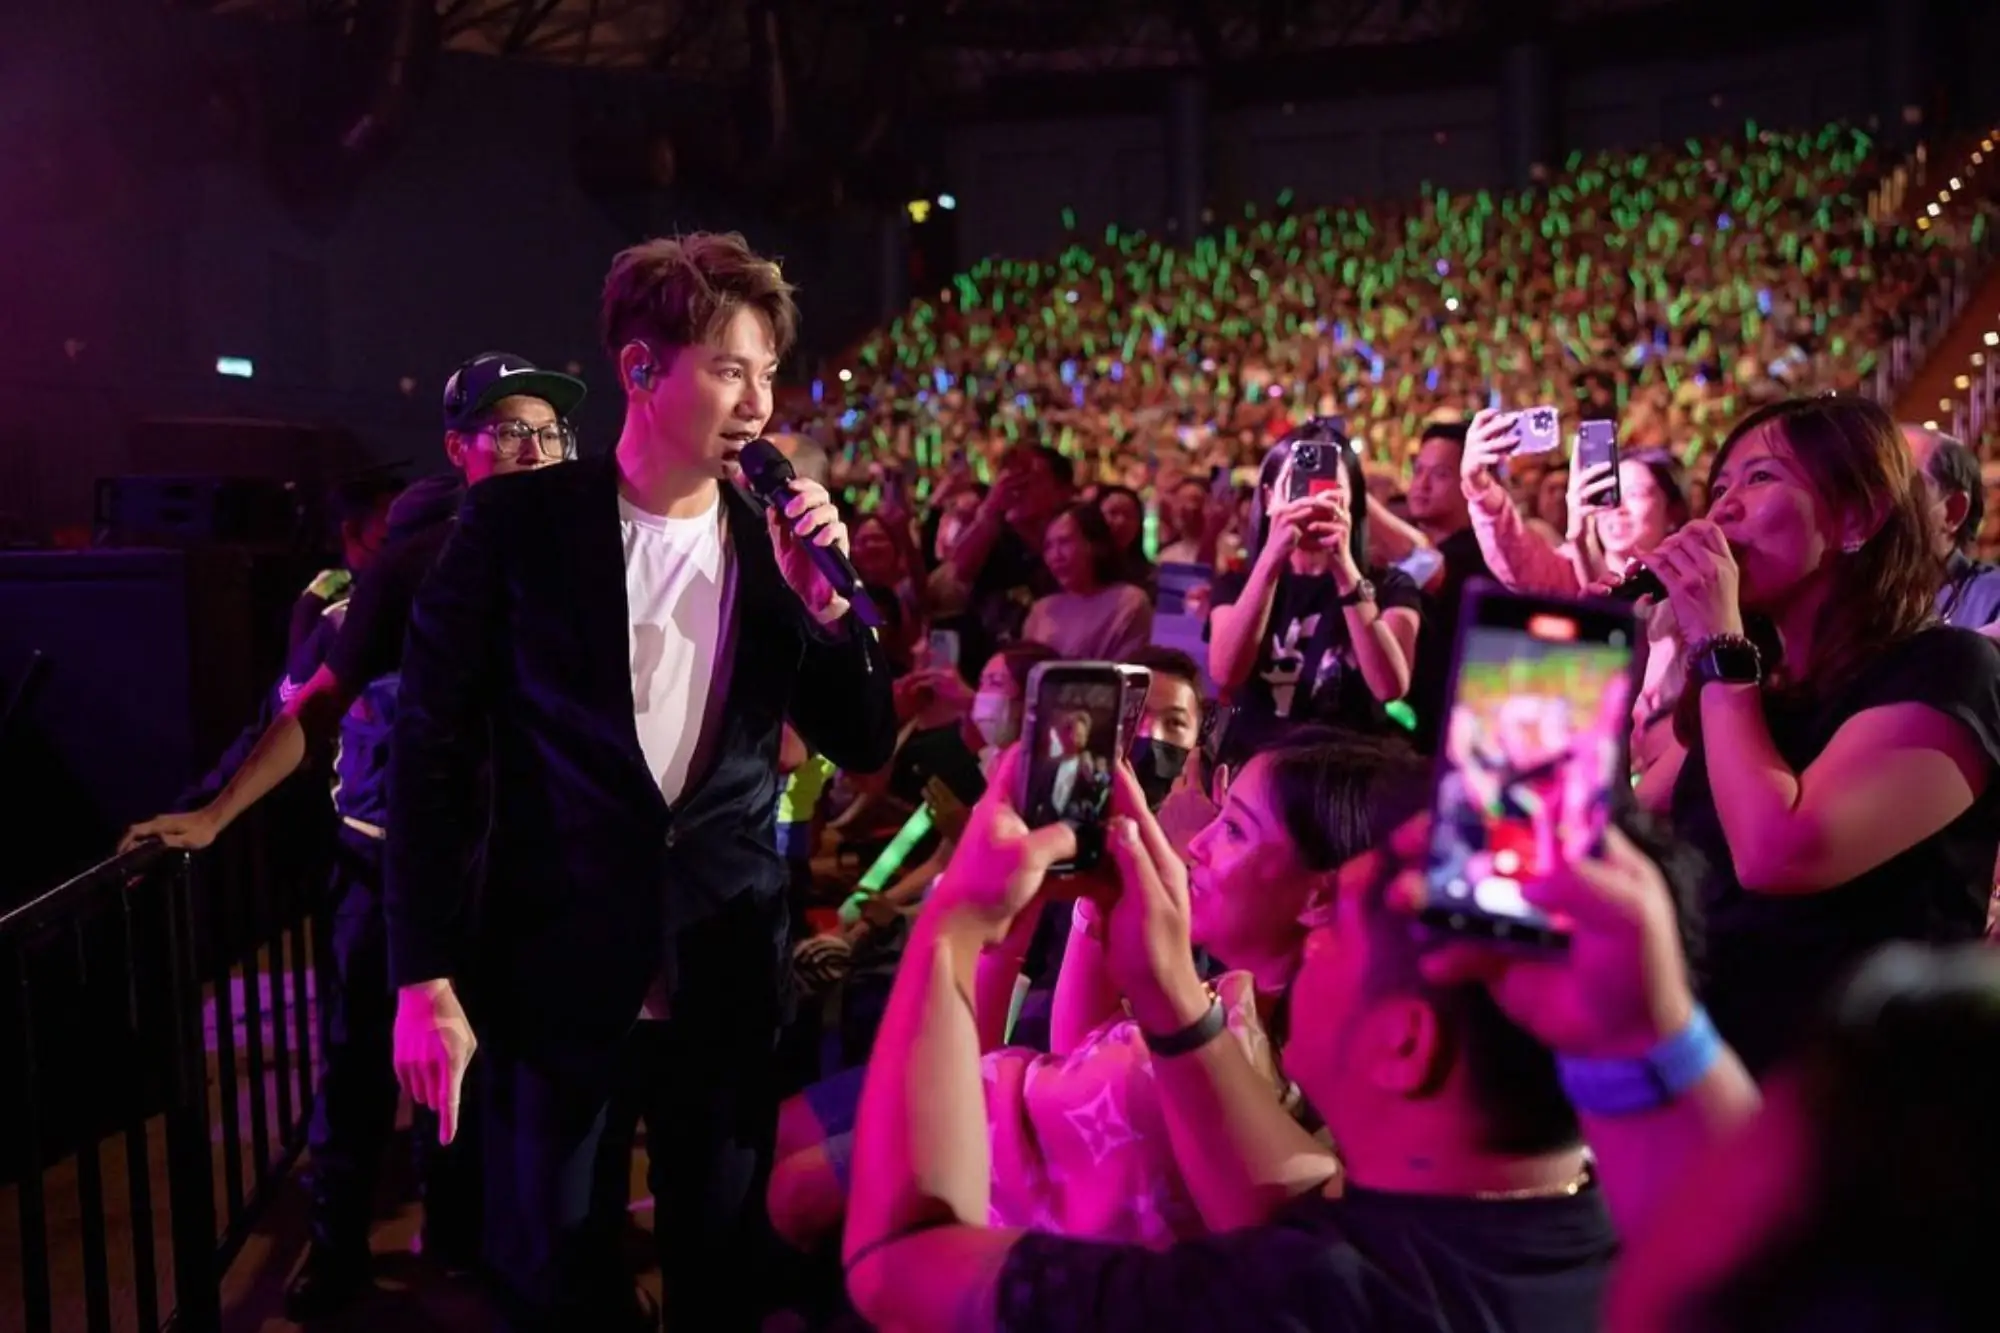 “一人一首李圣杰”泰国演唱会5月1日曼谷开唱 大型KTV盛会（来源：李圣杰FB）